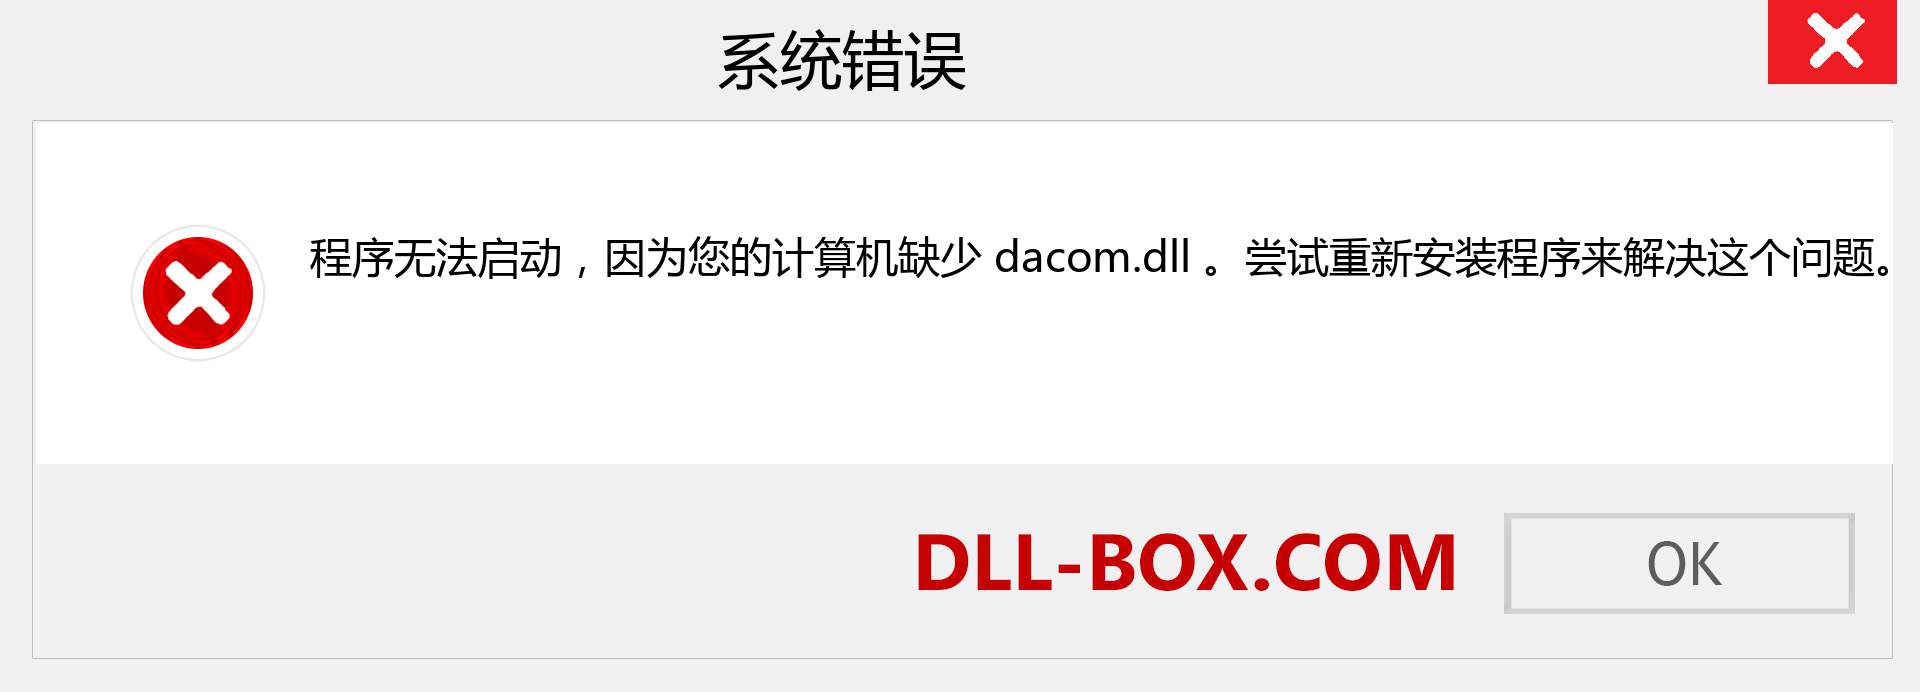 dacom.dll 文件丢失？。 适用于 Windows 7、8、10 的下载 - 修复 Windows、照片、图像上的 dacom dll 丢失错误